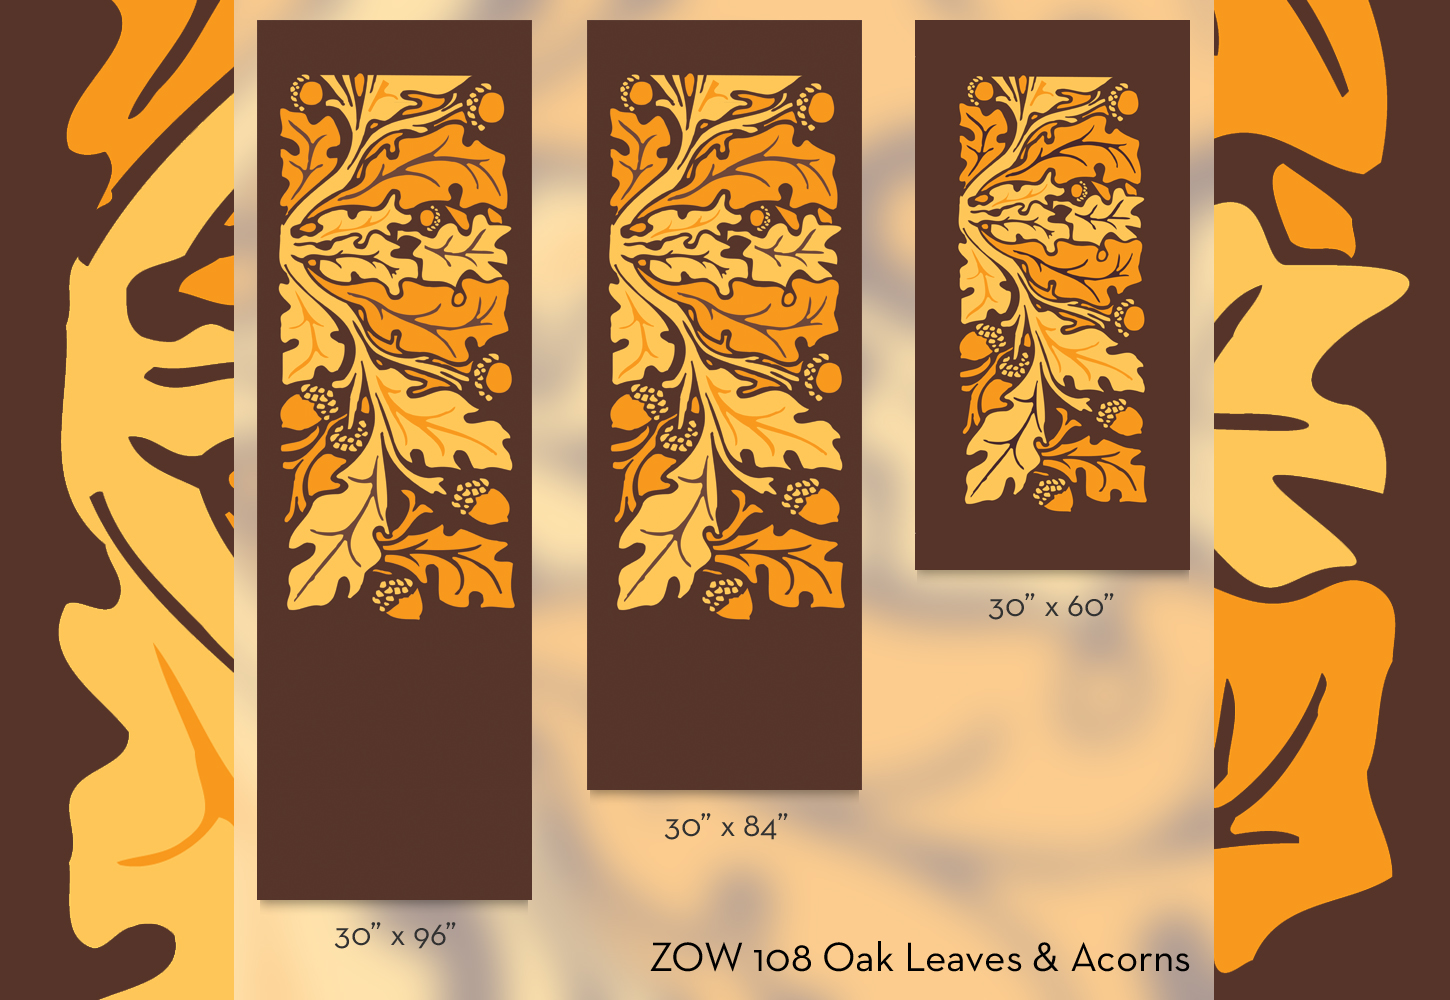 ZOW 108 Oak Leaves & Acorns